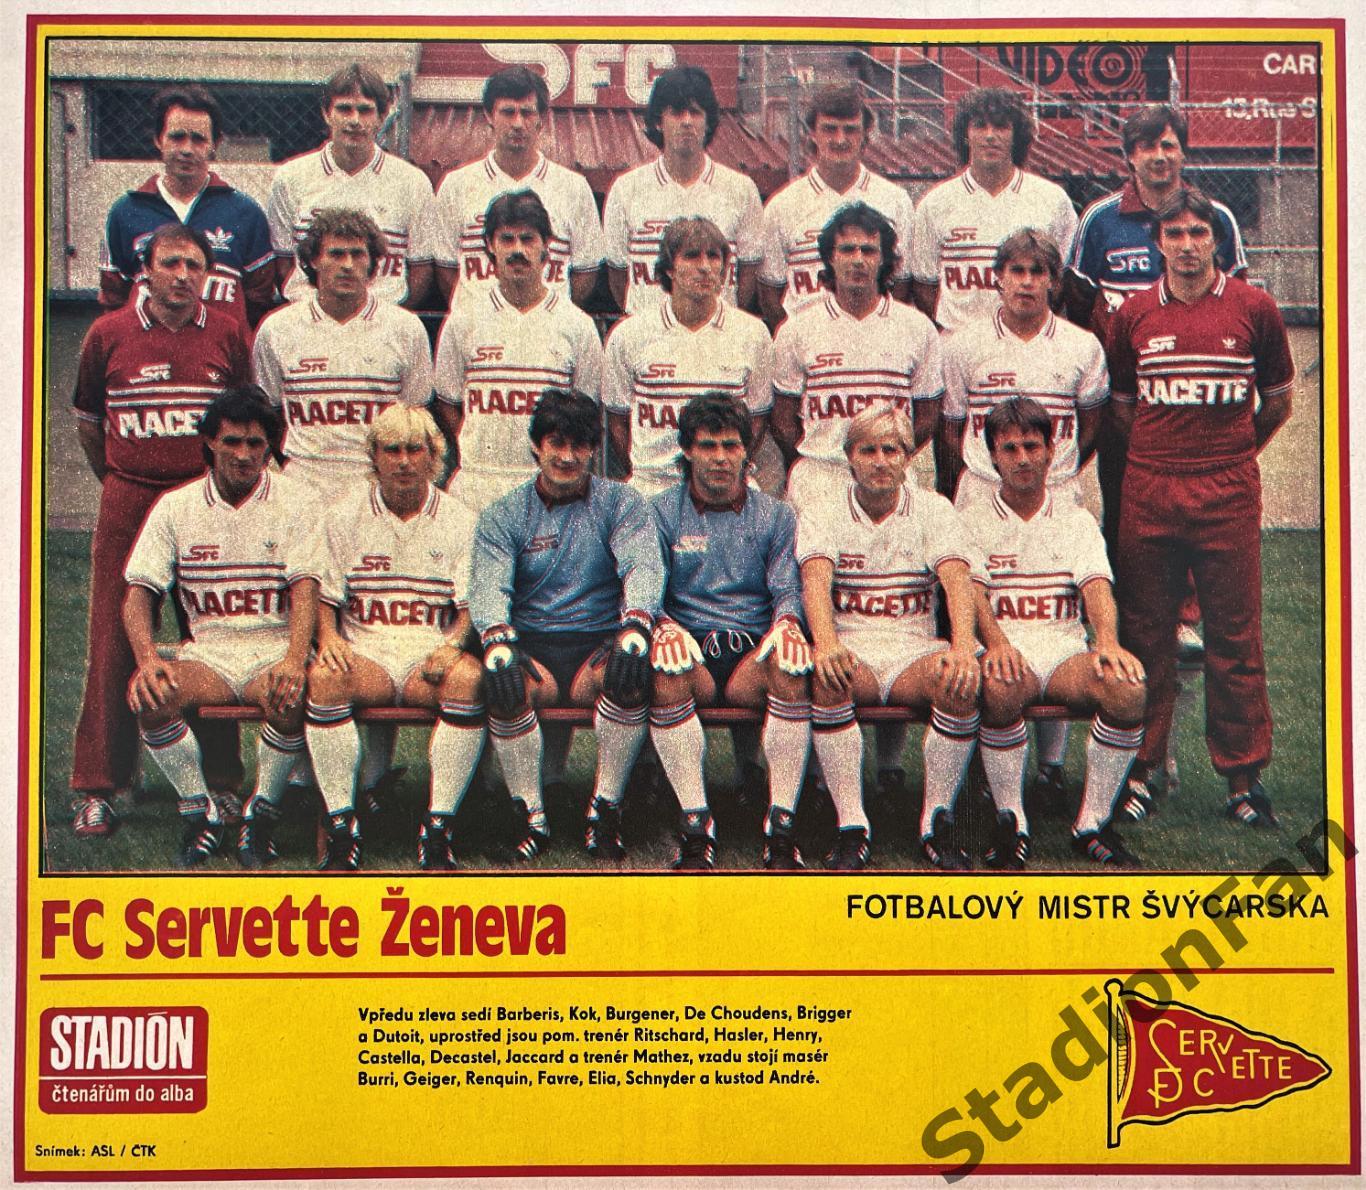 Постер из журнала Стадион (Stadion) - Servette Zeneva, 1984.